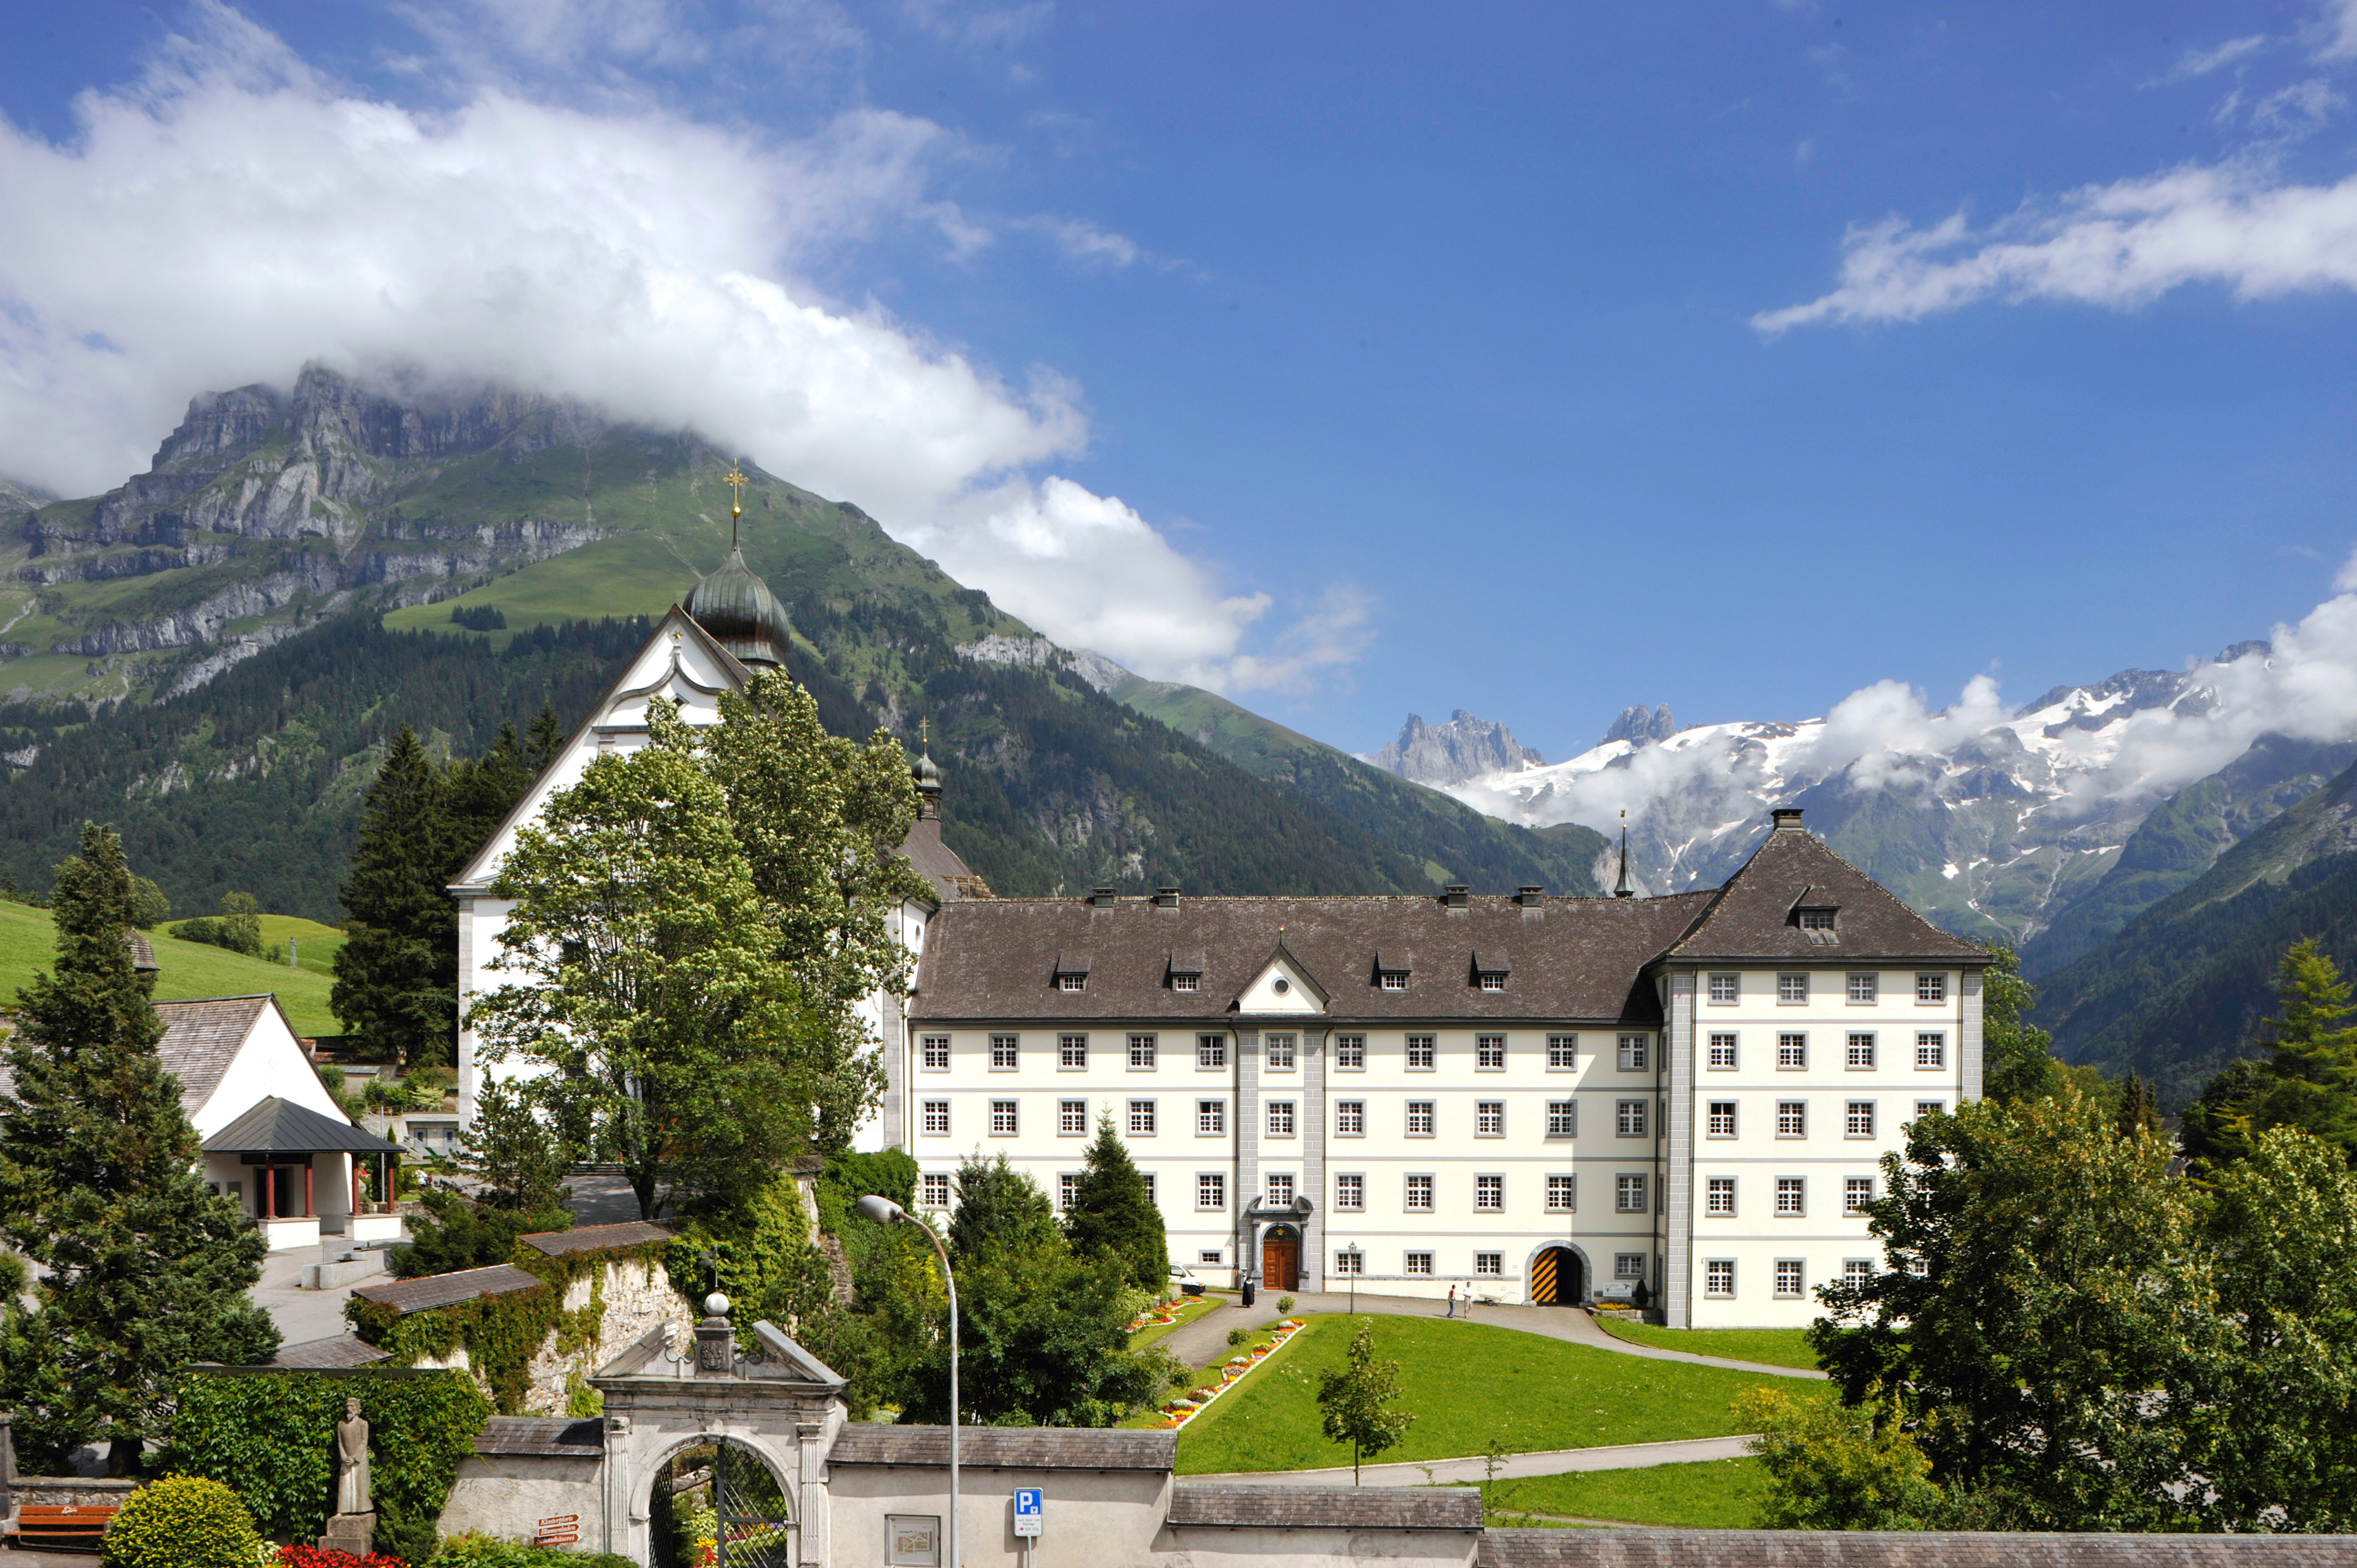 Kloster Engelberg, Schweiz:
